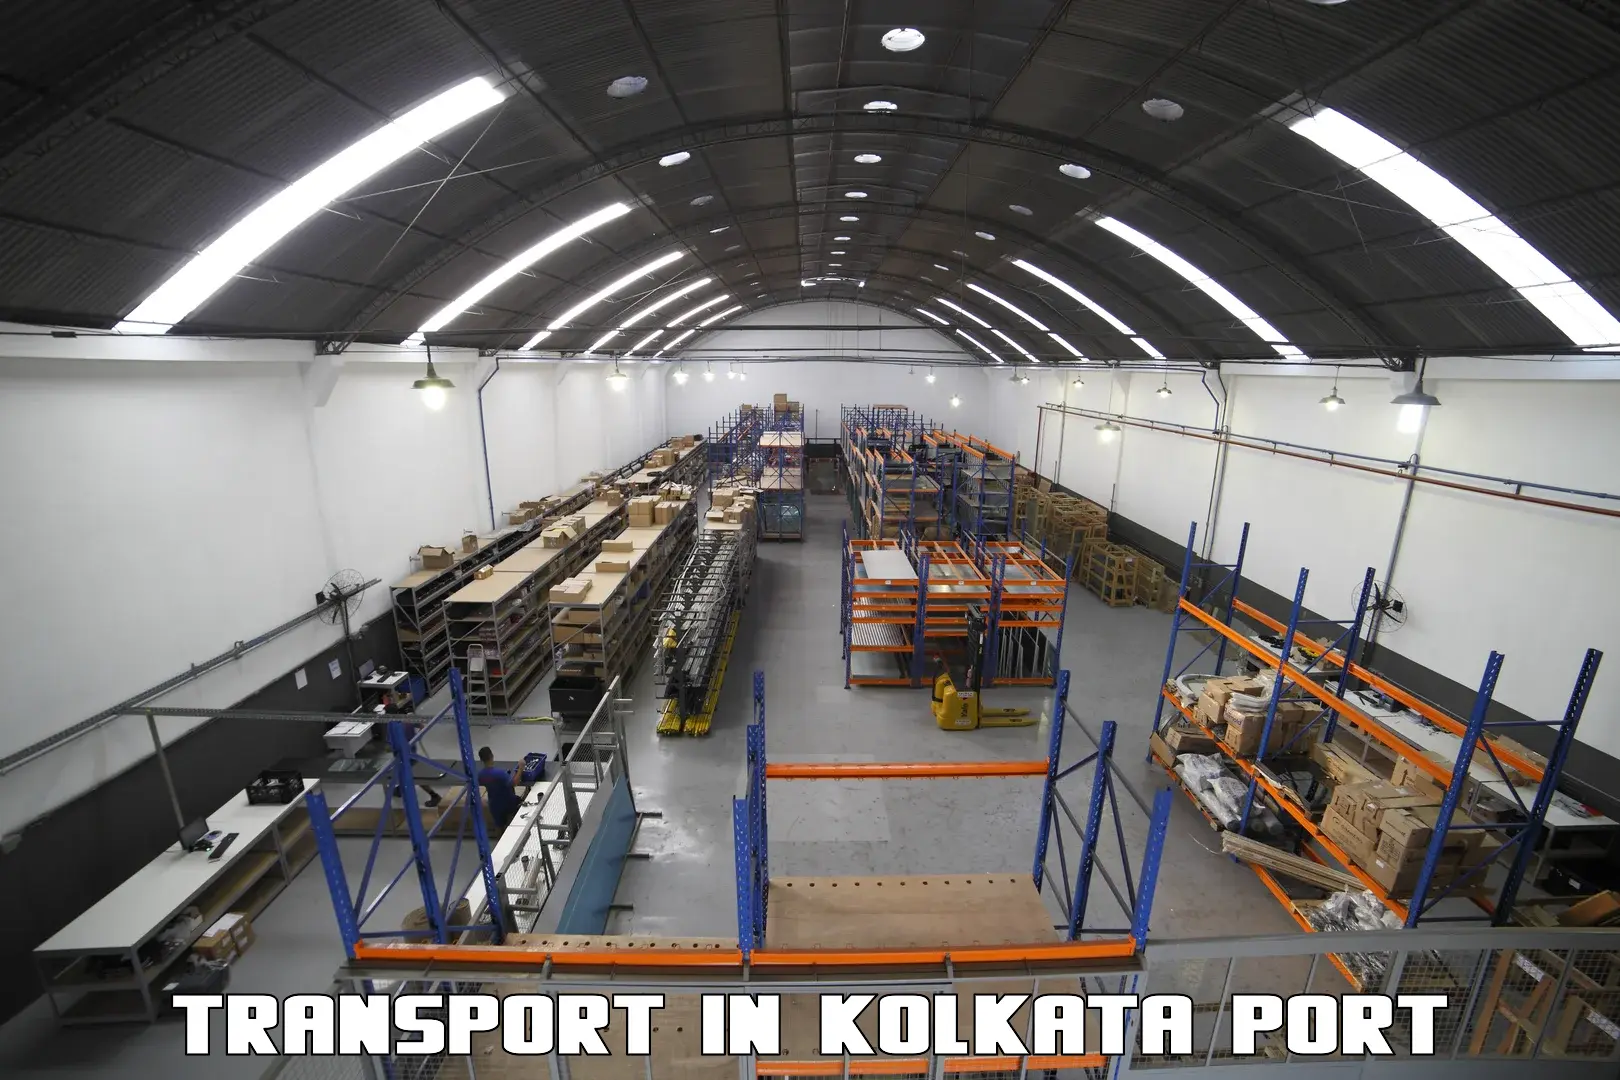 International cargo transportation services in Kolkata Port